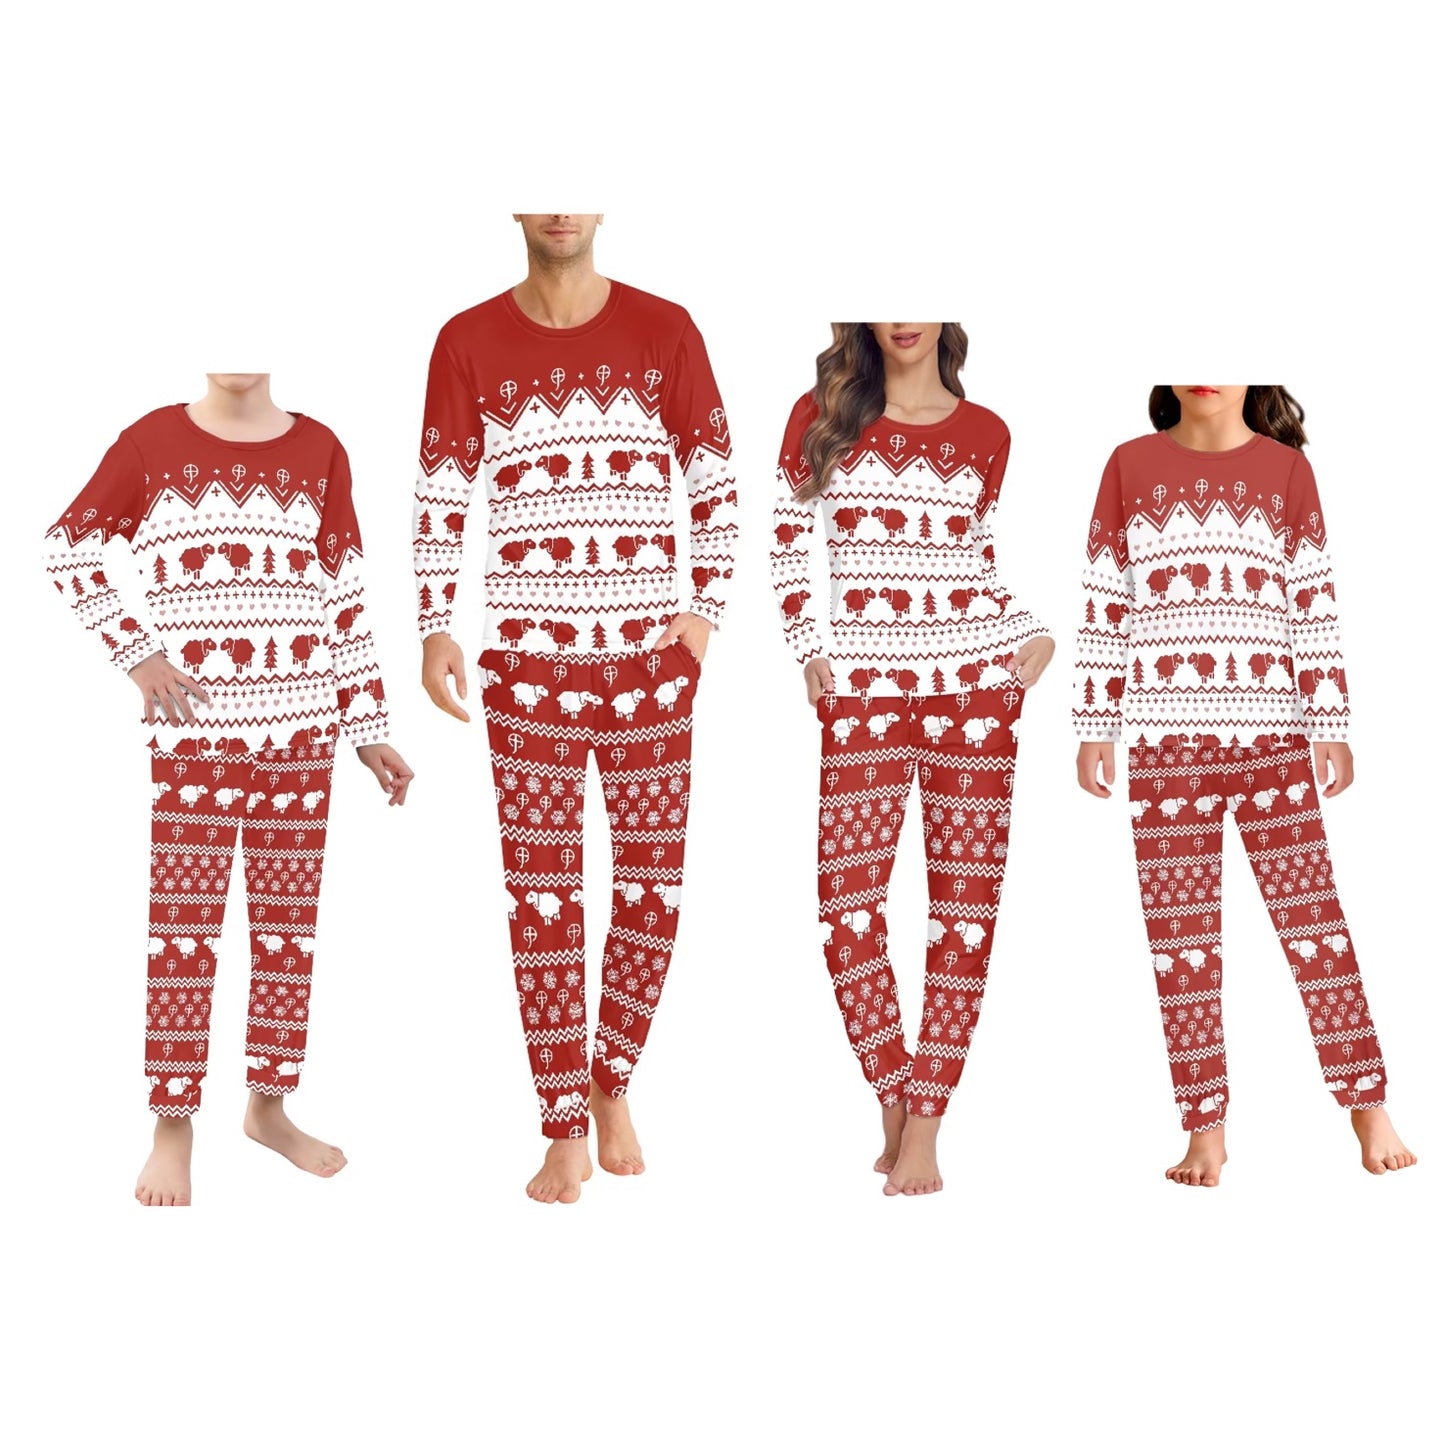 CC- Christmas tree snowflake Pajama